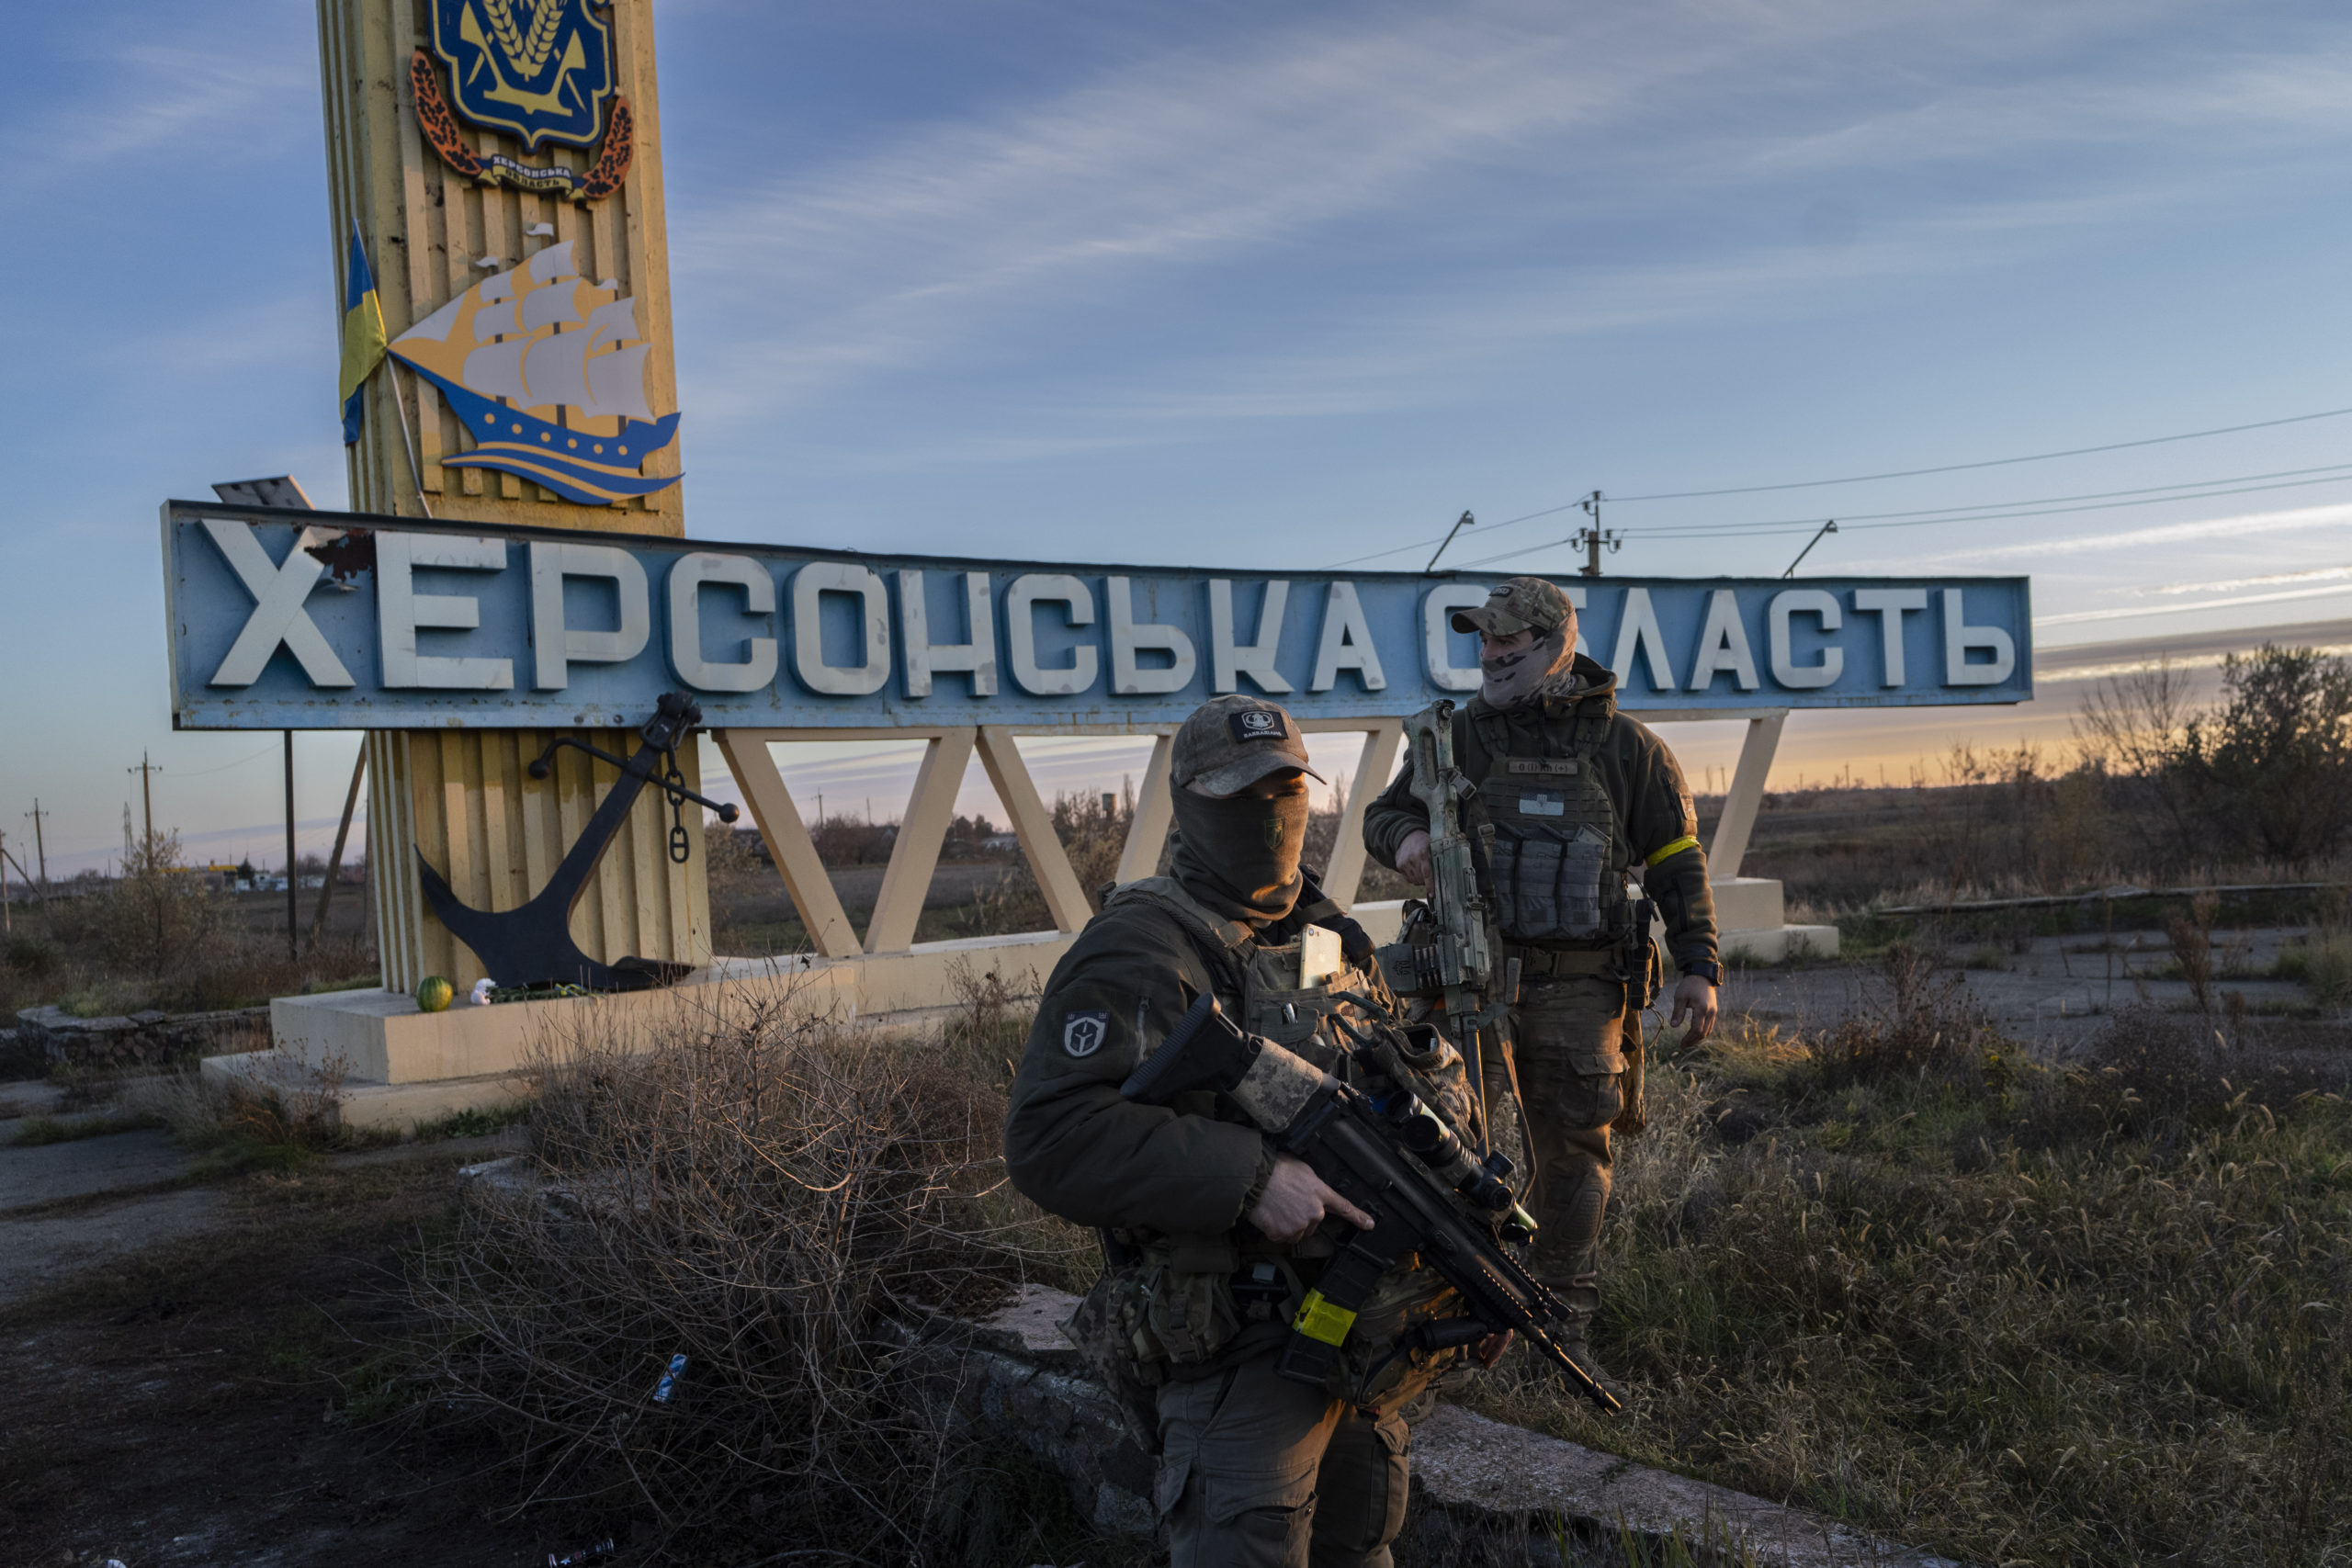 Κίεβο: Ο ρωσικός στρατός κατέστρεψε σταθμό ηλεκτροπαραγωγής στη Χερσώνα πριν αποχωρήσει